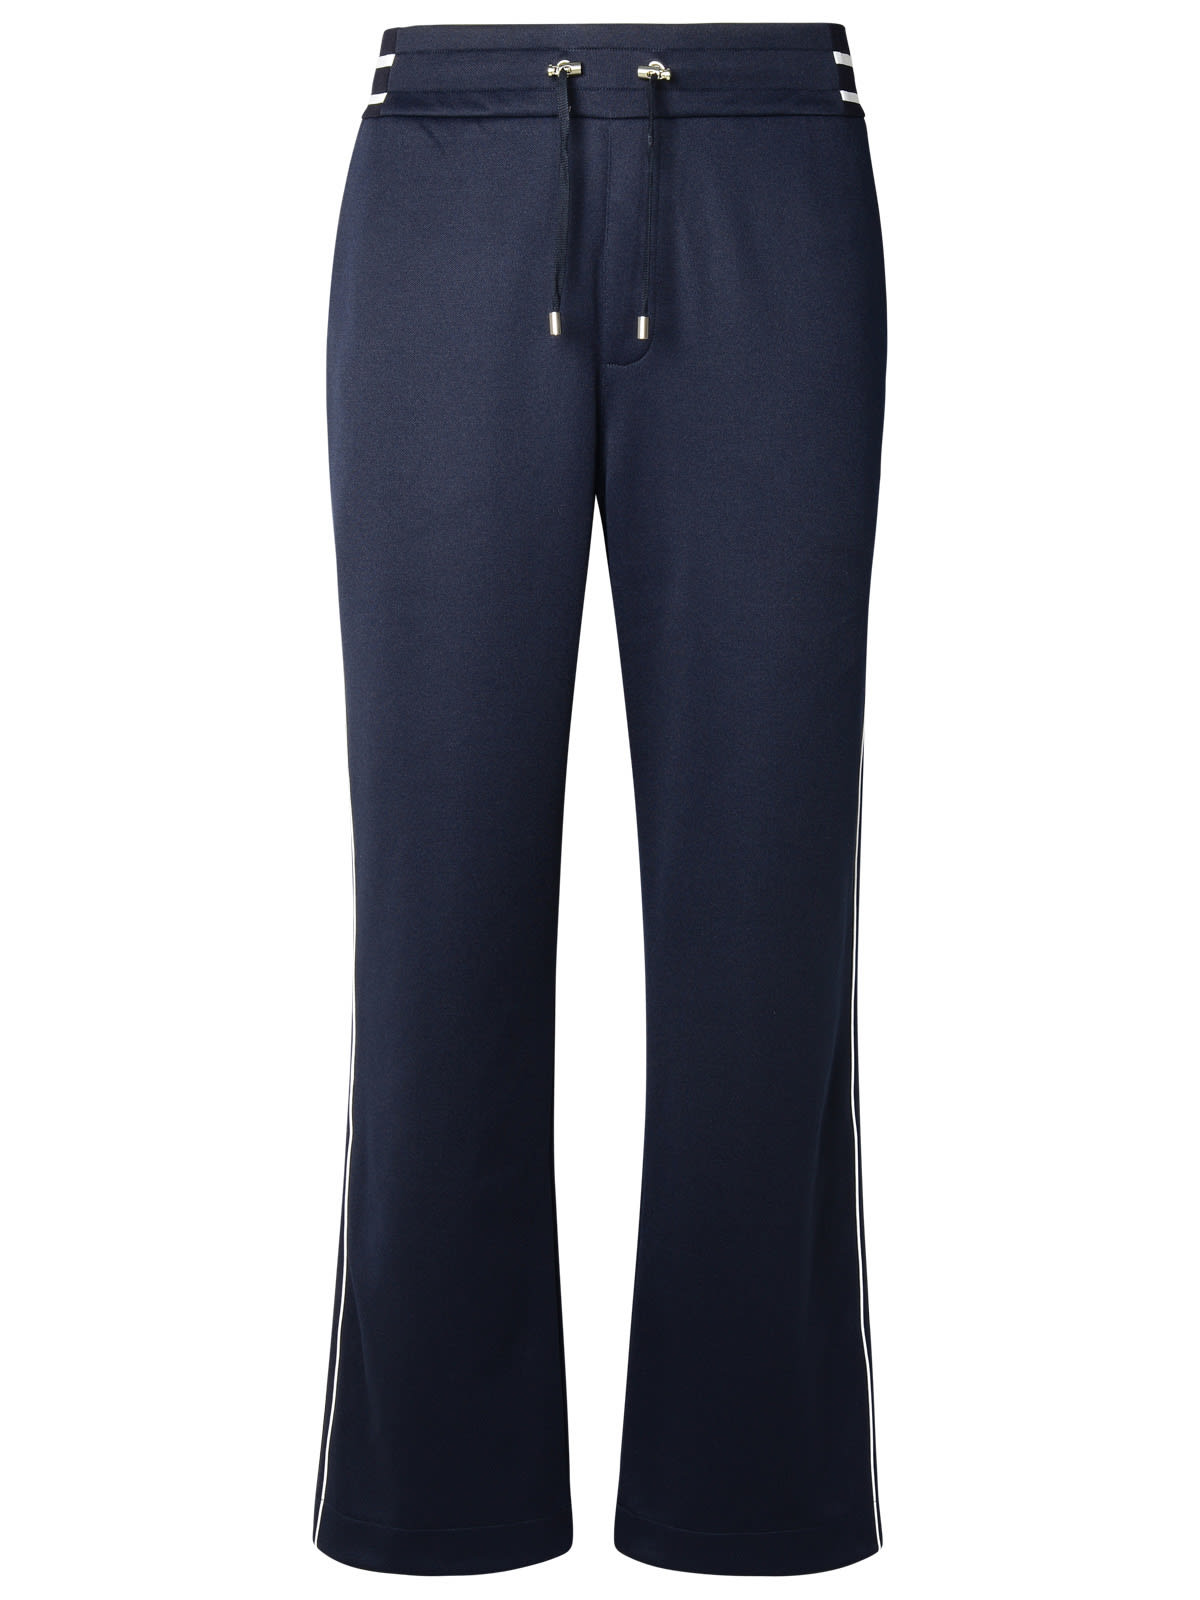 Shop Balmain Blue Cotton Blend Trousers